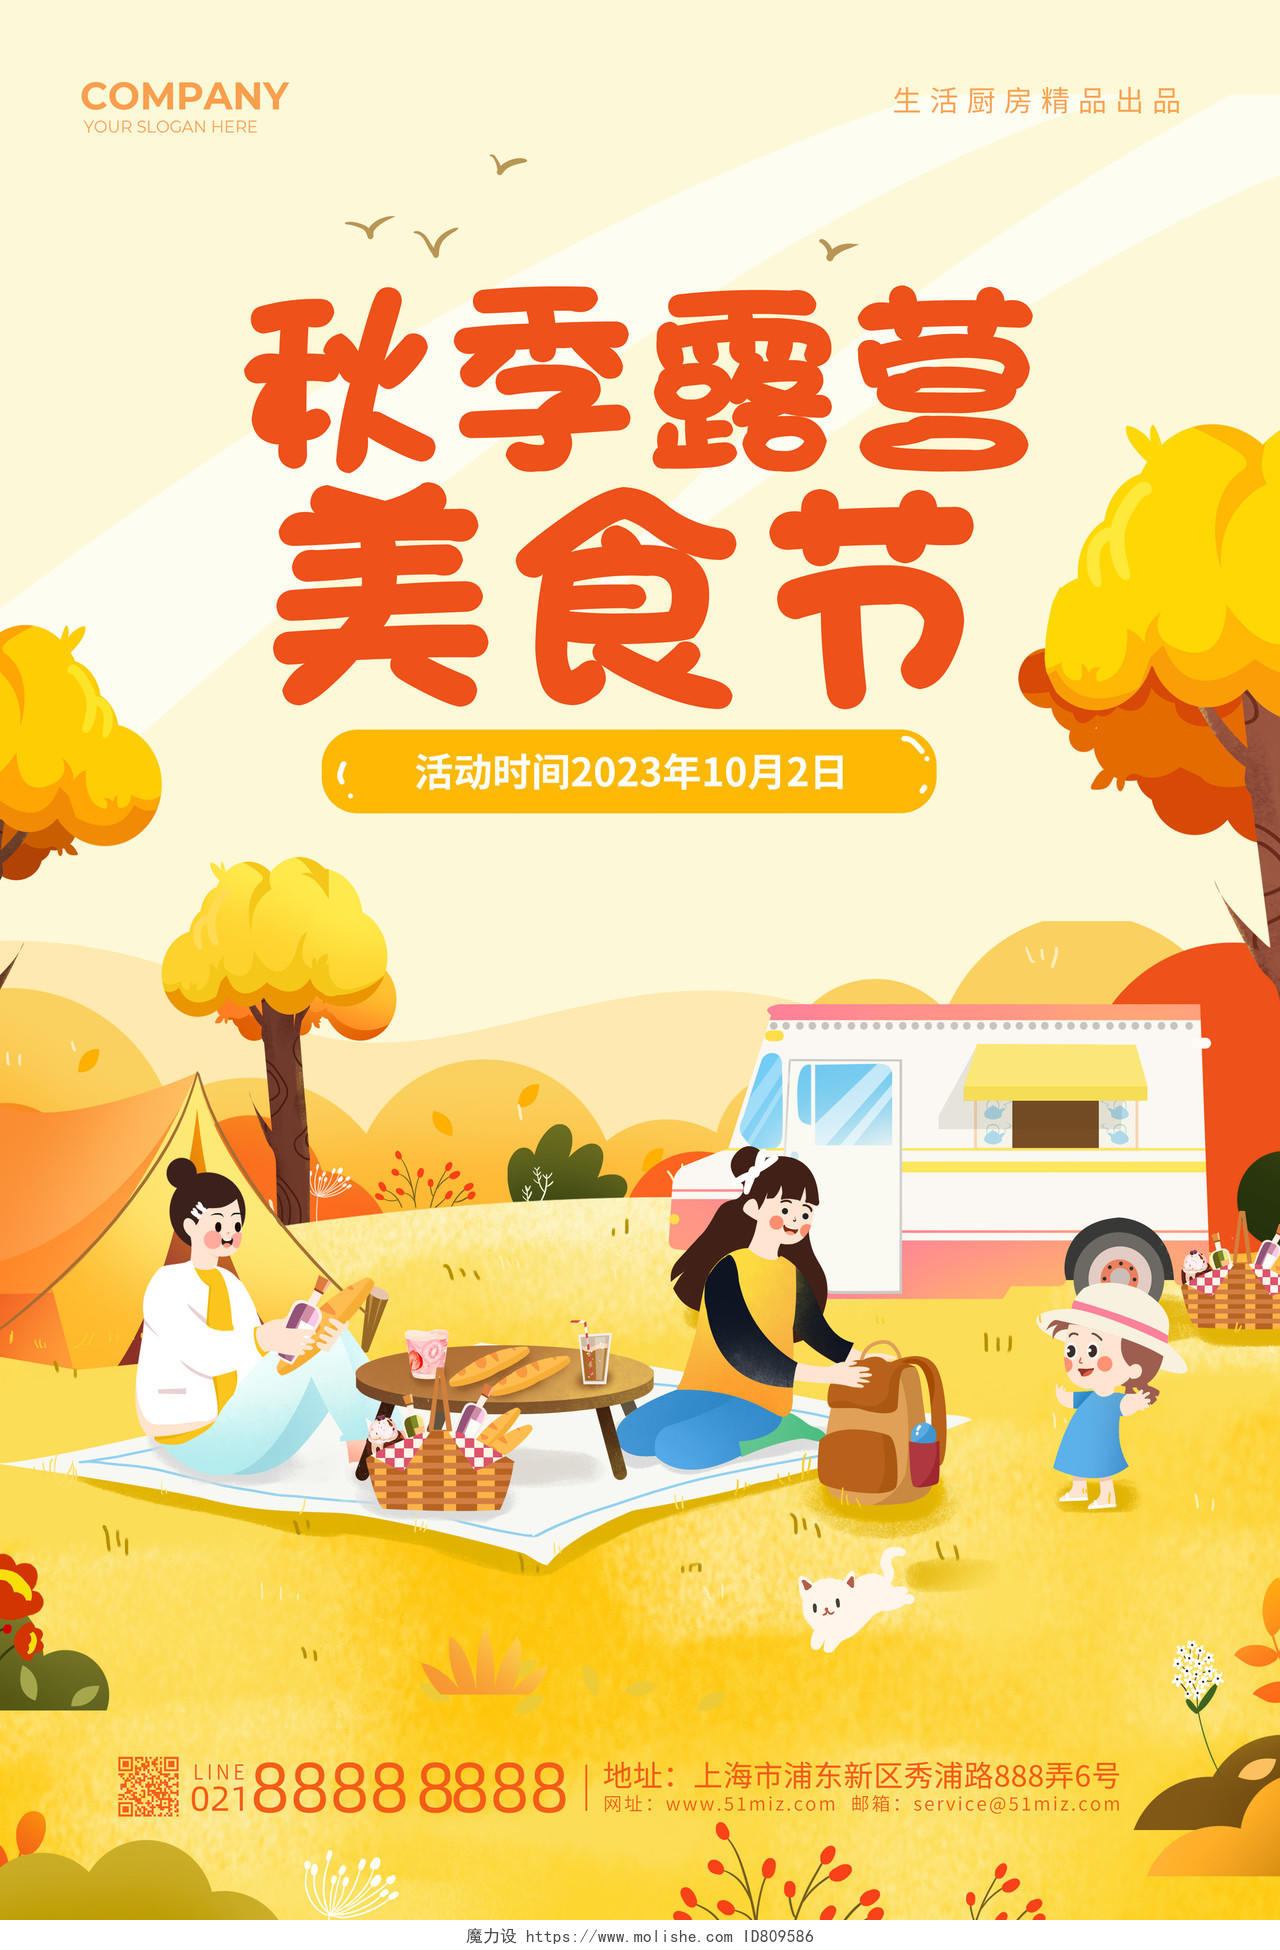 黄颜色背景创意卡通秋季露营美食节促销宣传海报